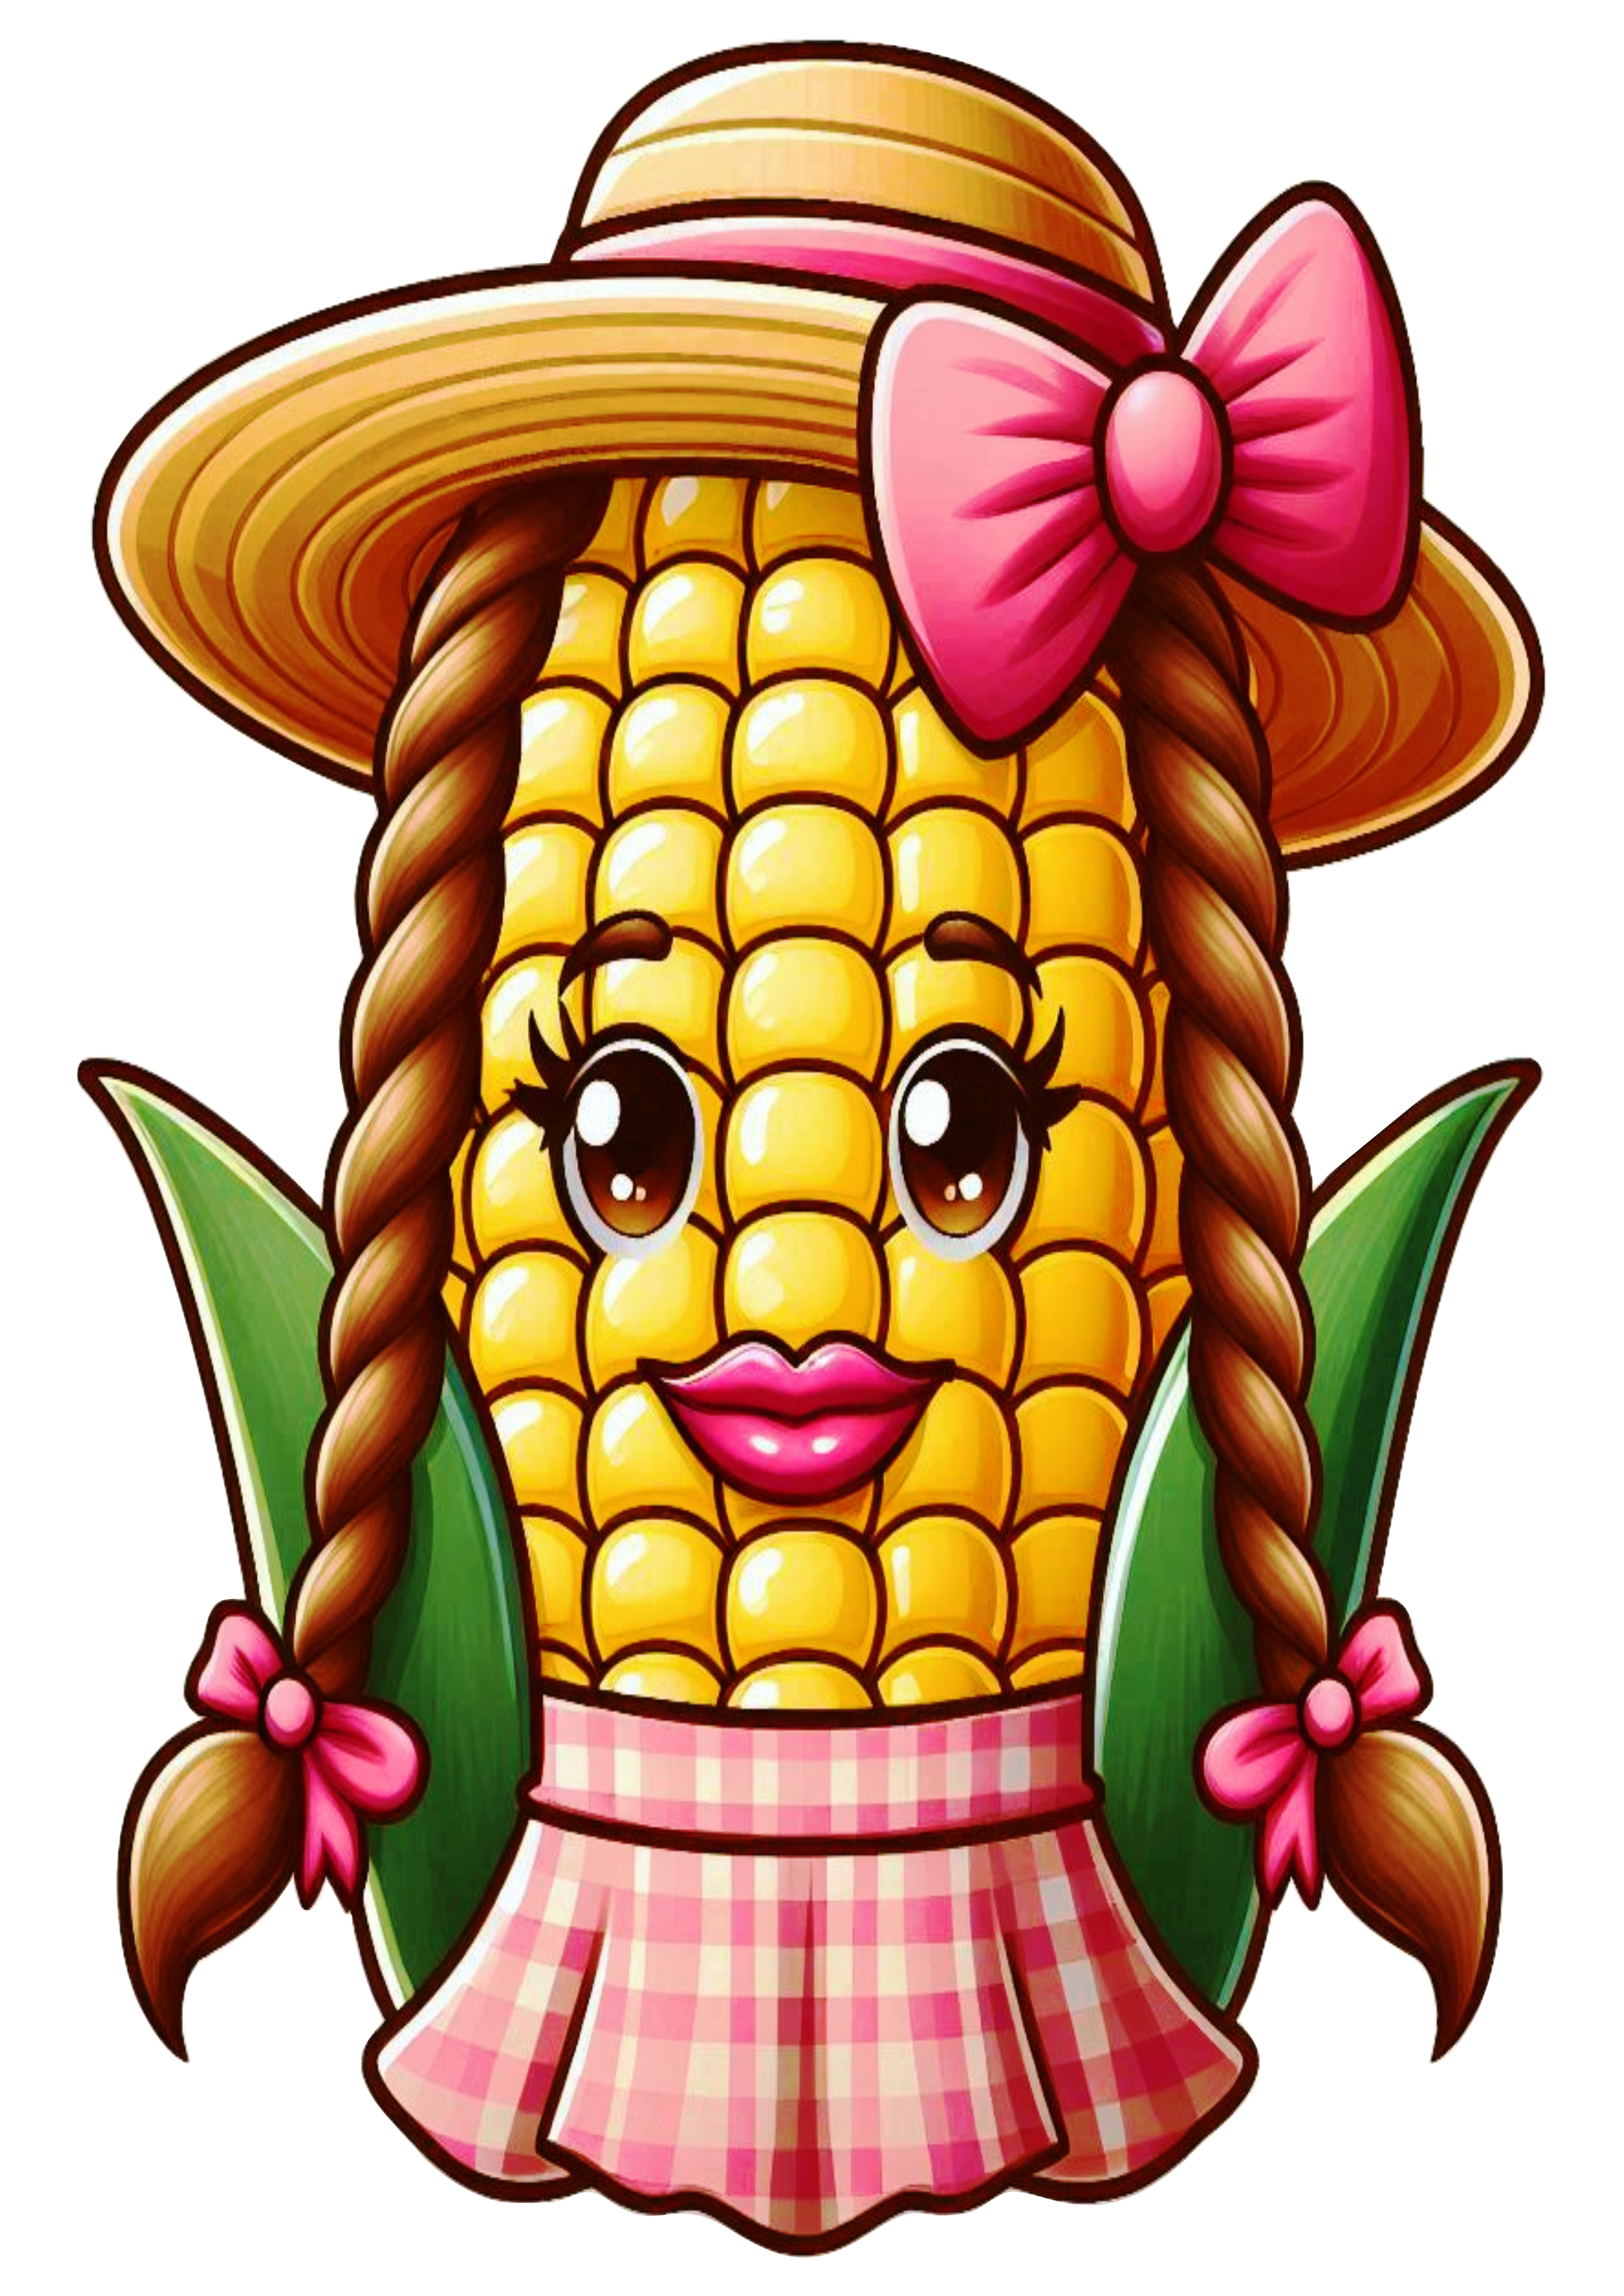 Imagens engraçadas para São João espiga de milho com chapéu de palha e trancinhas png fundo transparente clipart vetor ilustração